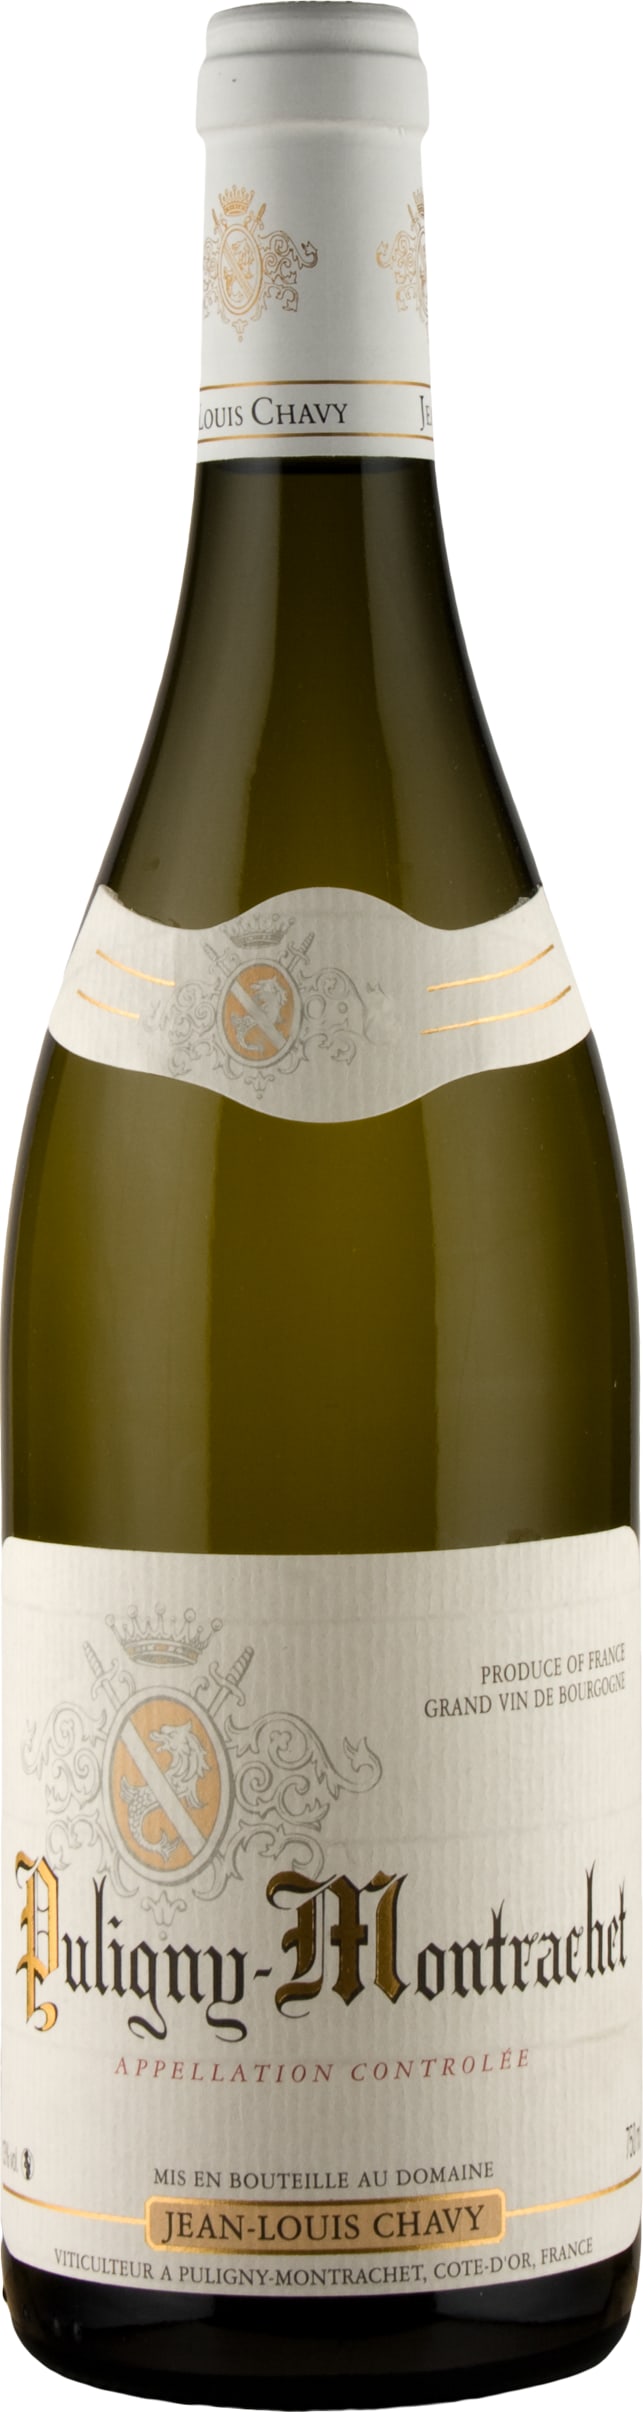 Jean Louis Chavy Puligny-Montrachet 2021 75cl - Buy Jean Louis Chavy Wines from GREAT WINES DIRECT wine shop